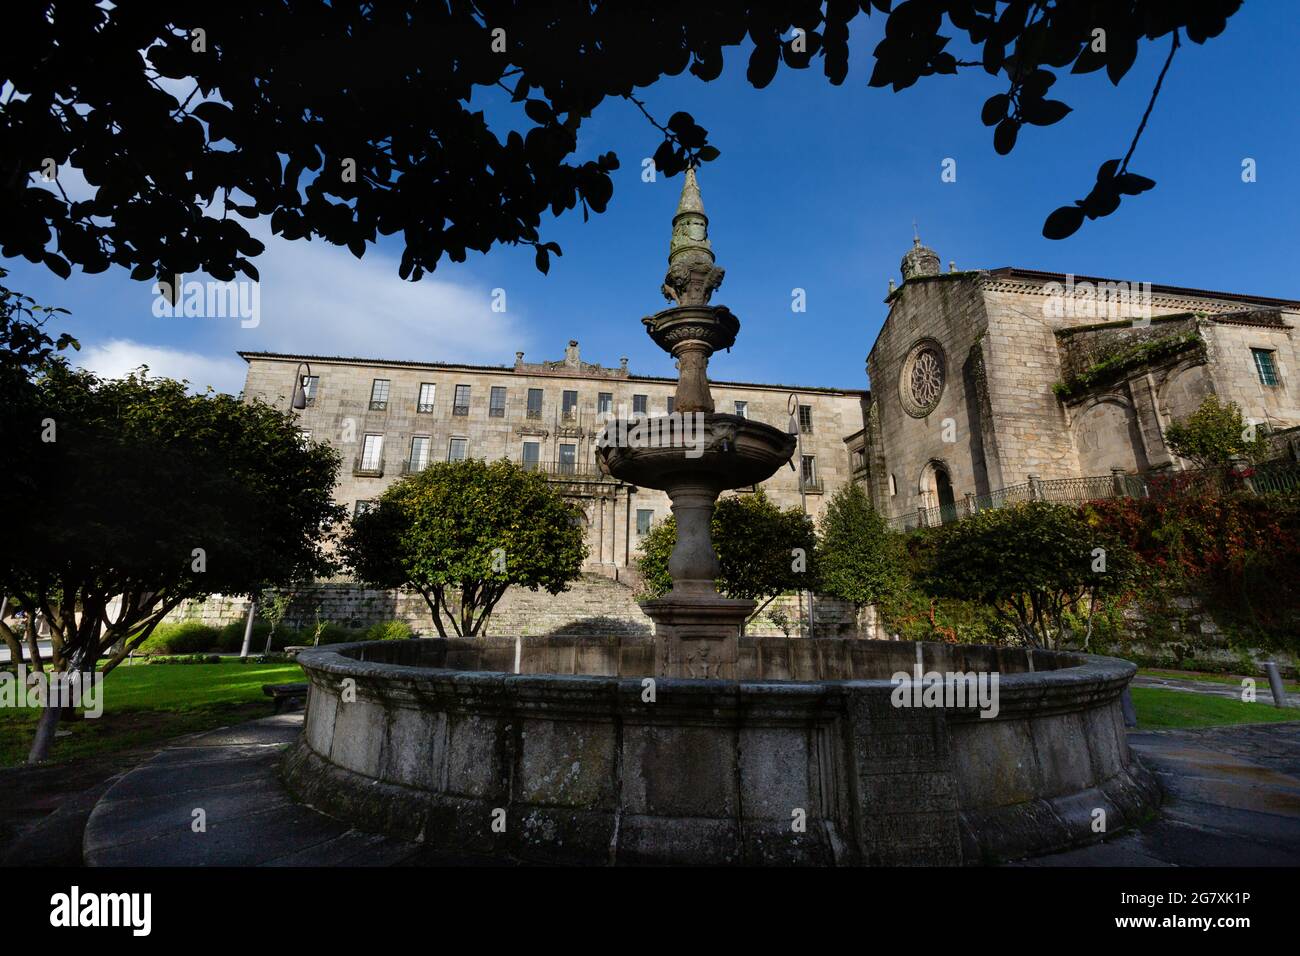 Fuente de la Herrería, del Siglo XVI, situada en la Plaza de la Herrería en los jardines de Castro Sampedro. Al fondo el Convento de San Francisco. Stock Photo